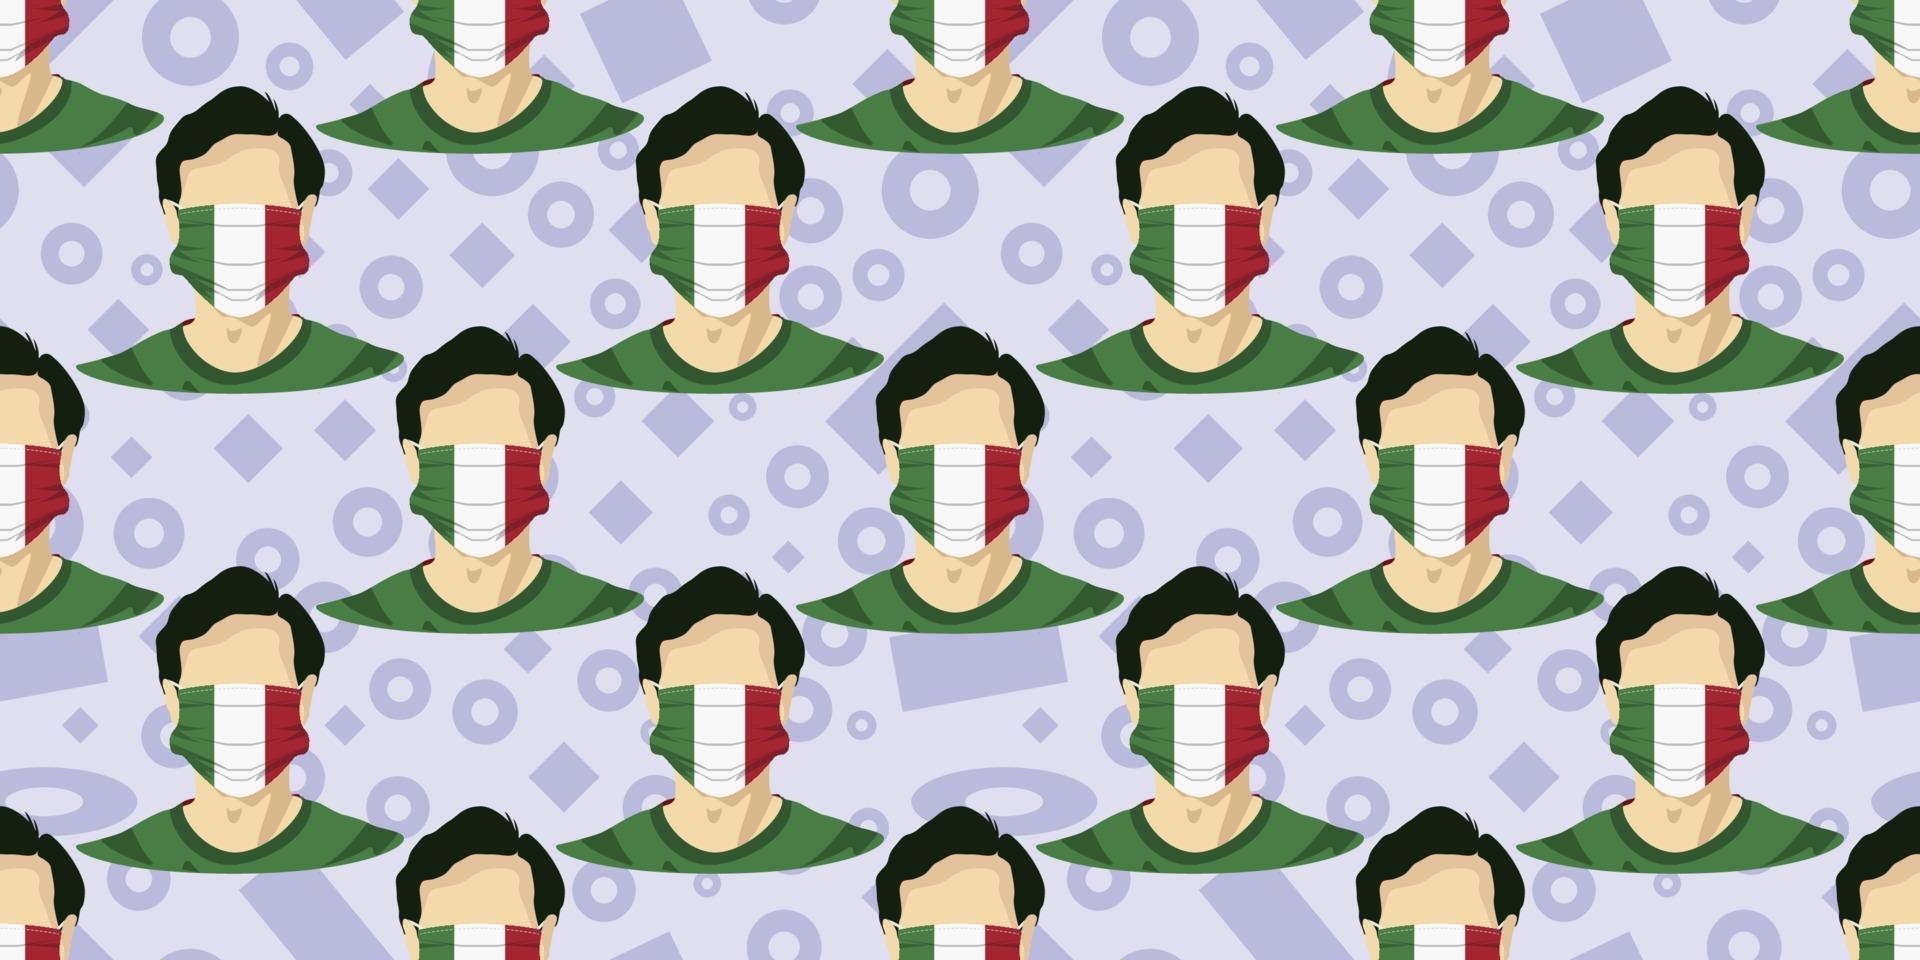 sömlöst mönster av bild man bär italienska flaggor kirurgisk mask för att förhindra sjukdomar isolerade på memphis element bakgrund. bra för mallbakgrund, banner, affisch, etc. vektor eps10.